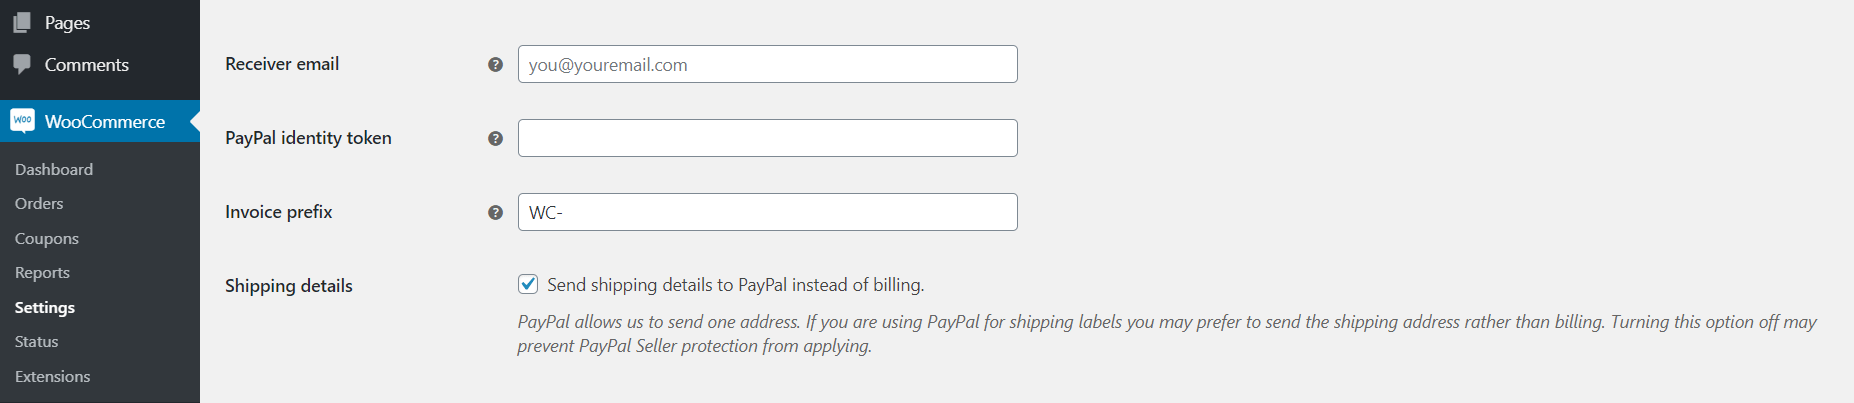 配置您的PayPal设置。